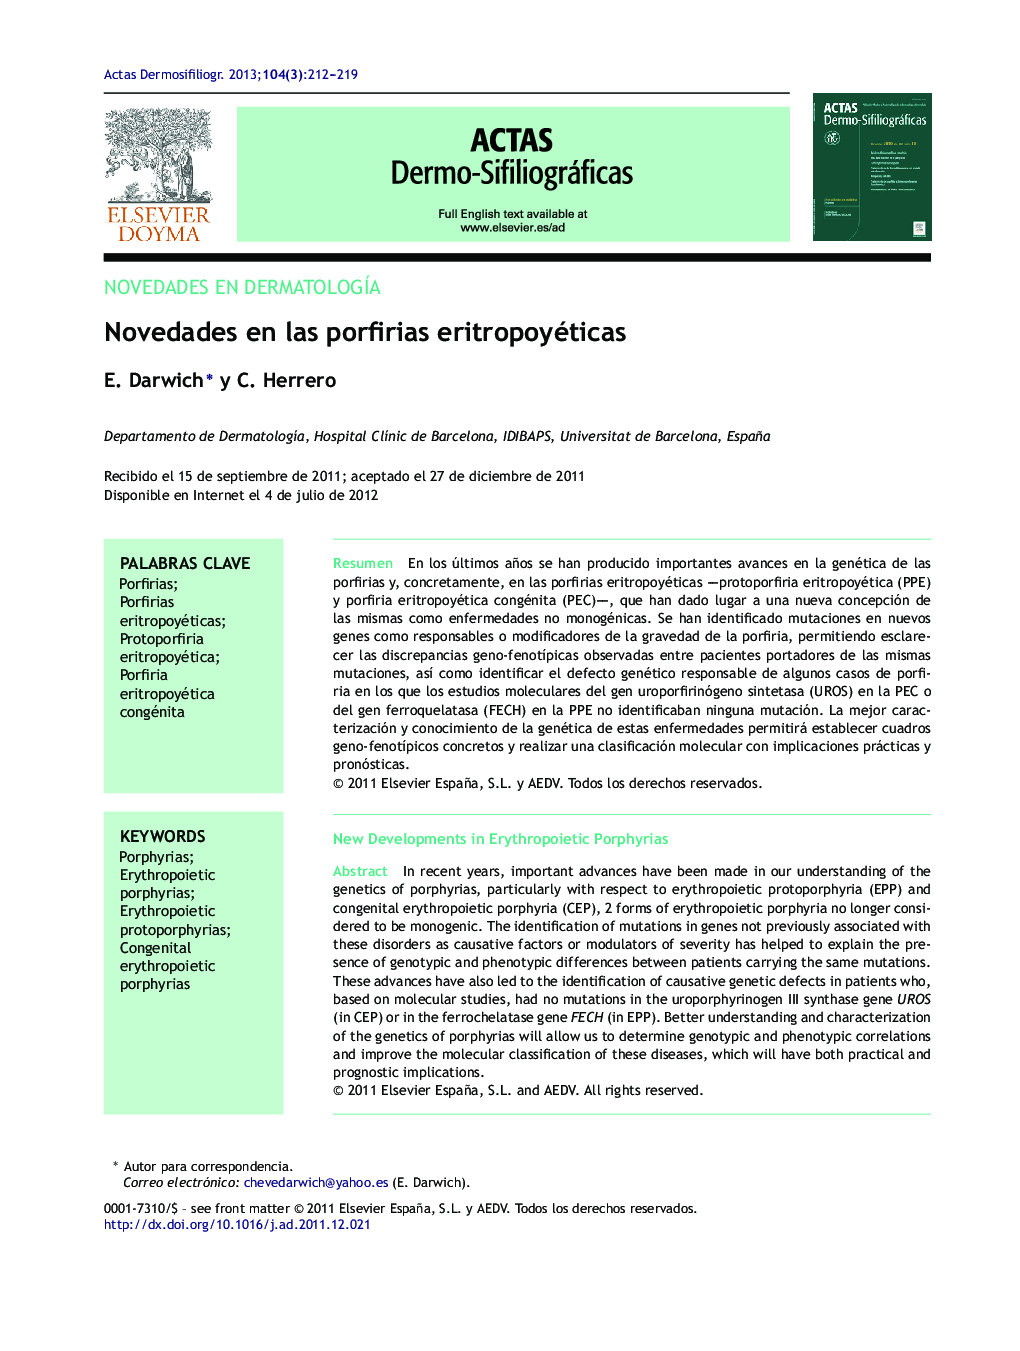 Novedades en las porfirias eritropoyéticas